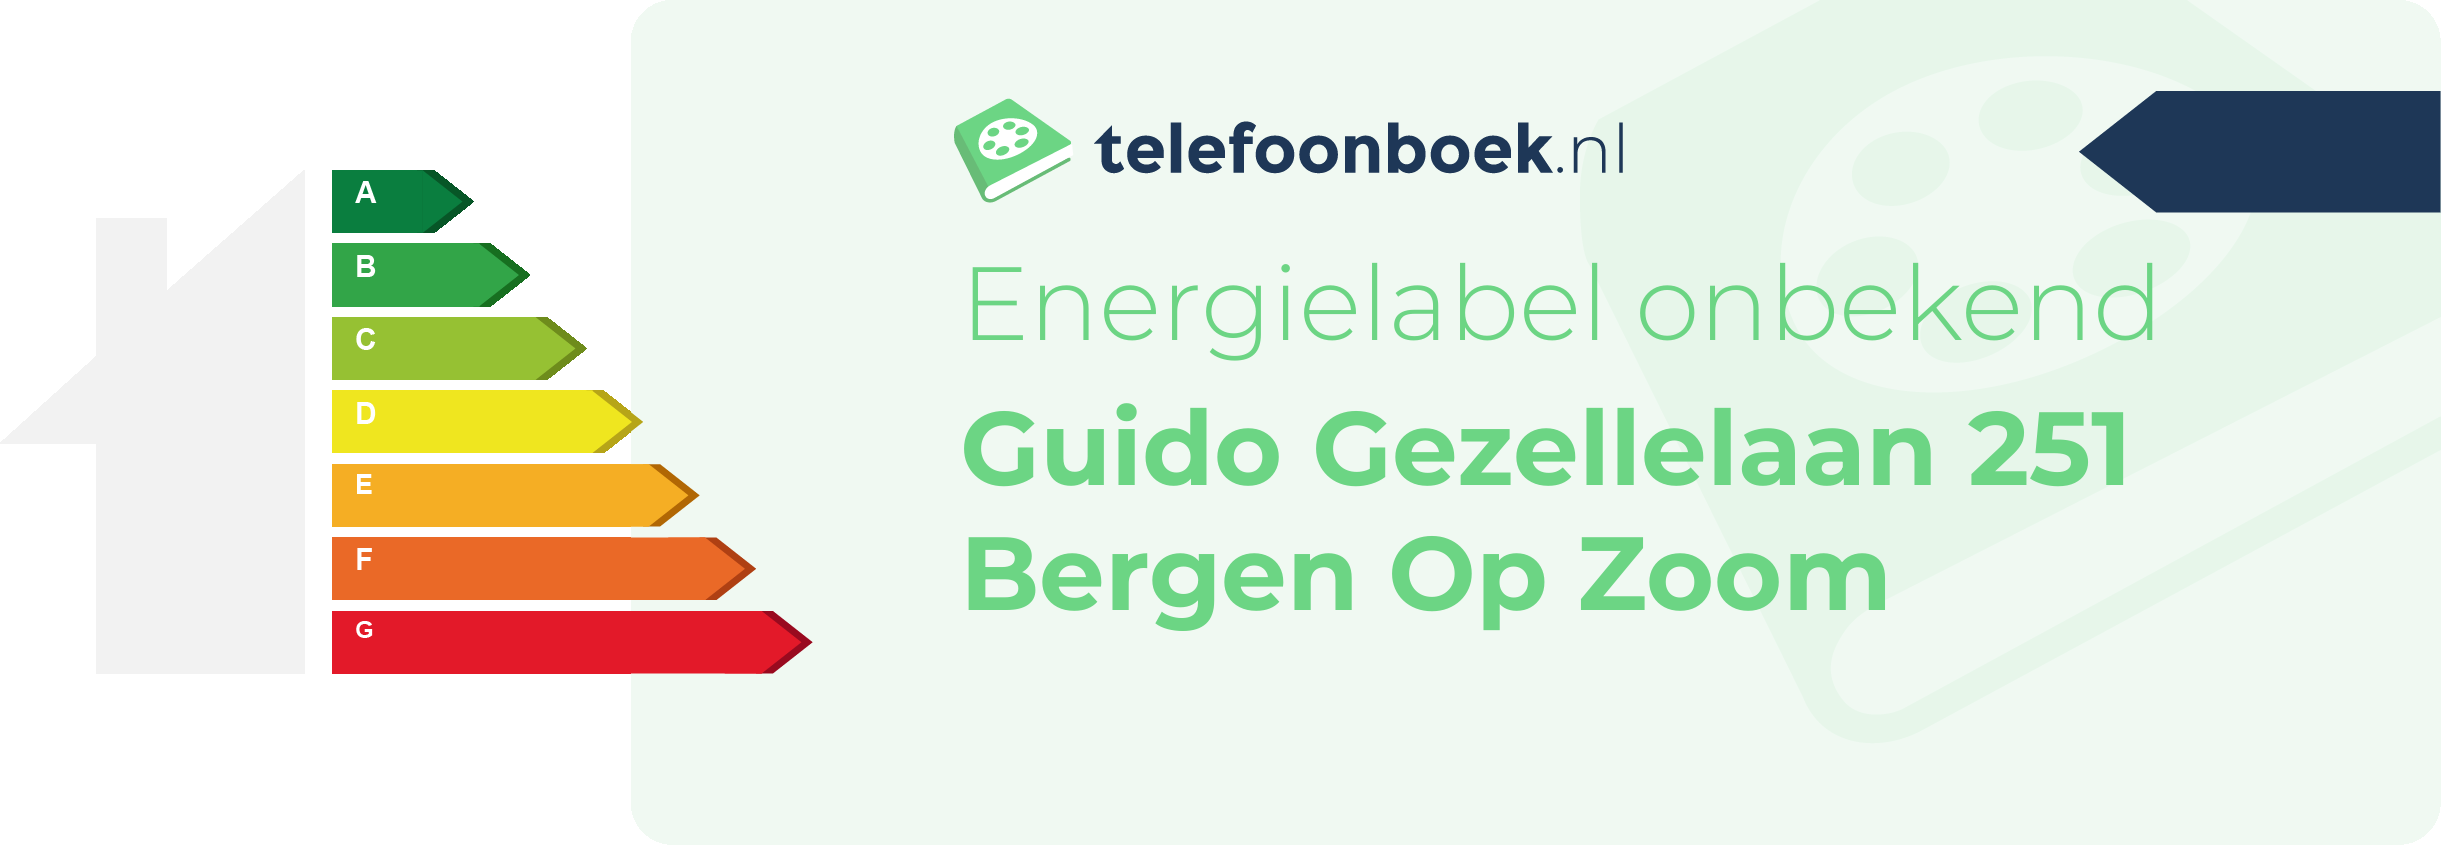 Energielabel Guido Gezellelaan 251 Bergen Op Zoom